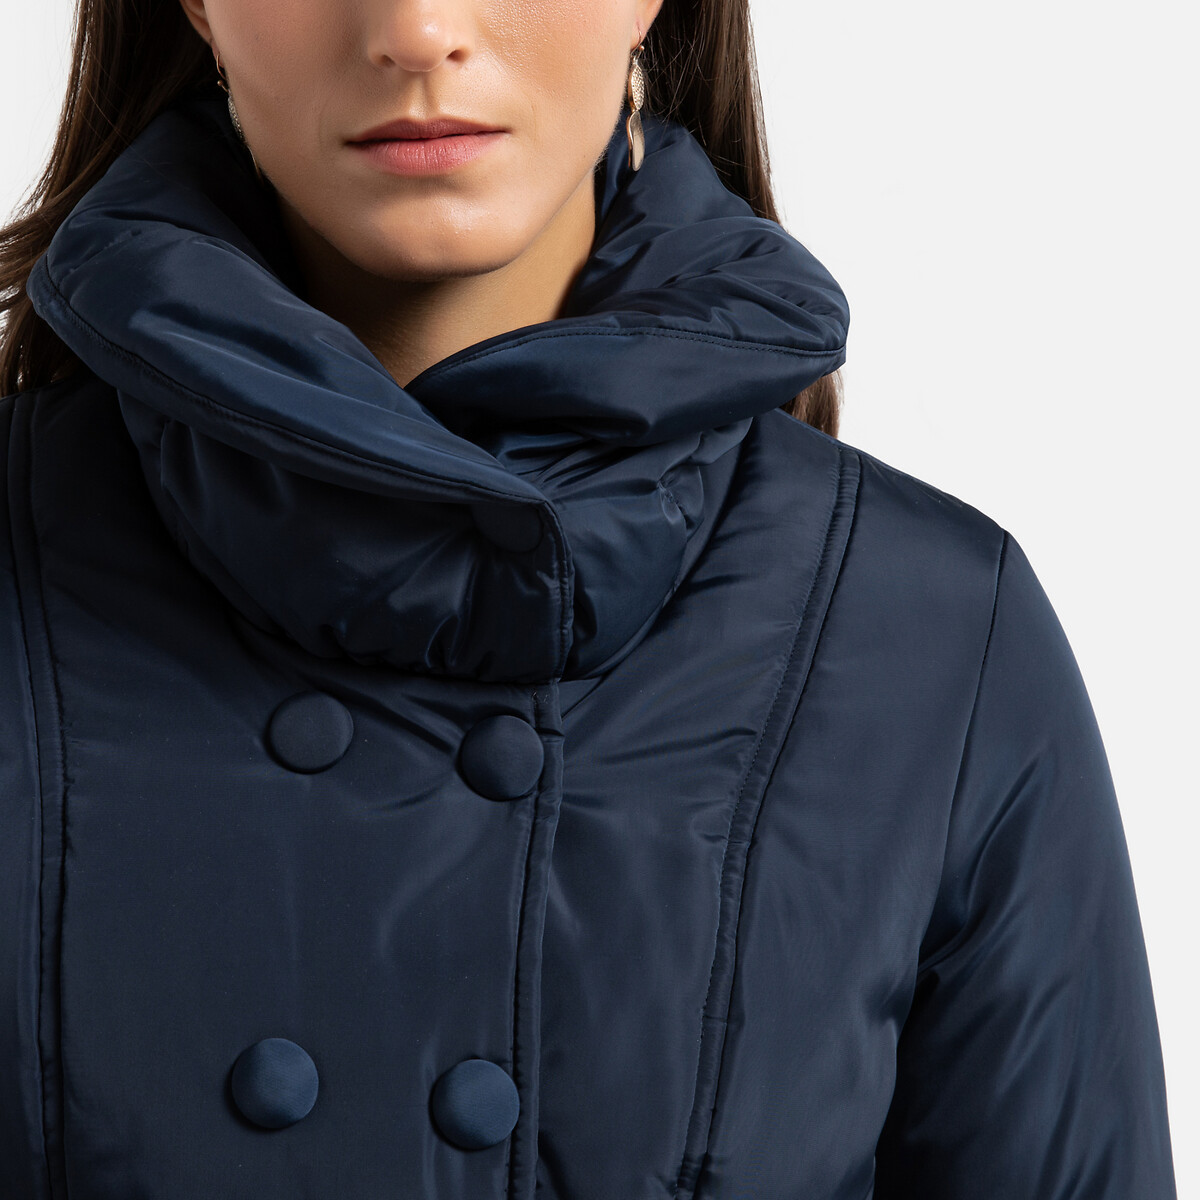 Куртка La Redoute Стеганая средней длины зимняя модель 38 (FR) - 44 (RUS) синий, размер 38 (FR) - 44 (RUS) Стеганая средней длины зимняя модель 38 (FR) - 44 (RUS) синий - фото 3